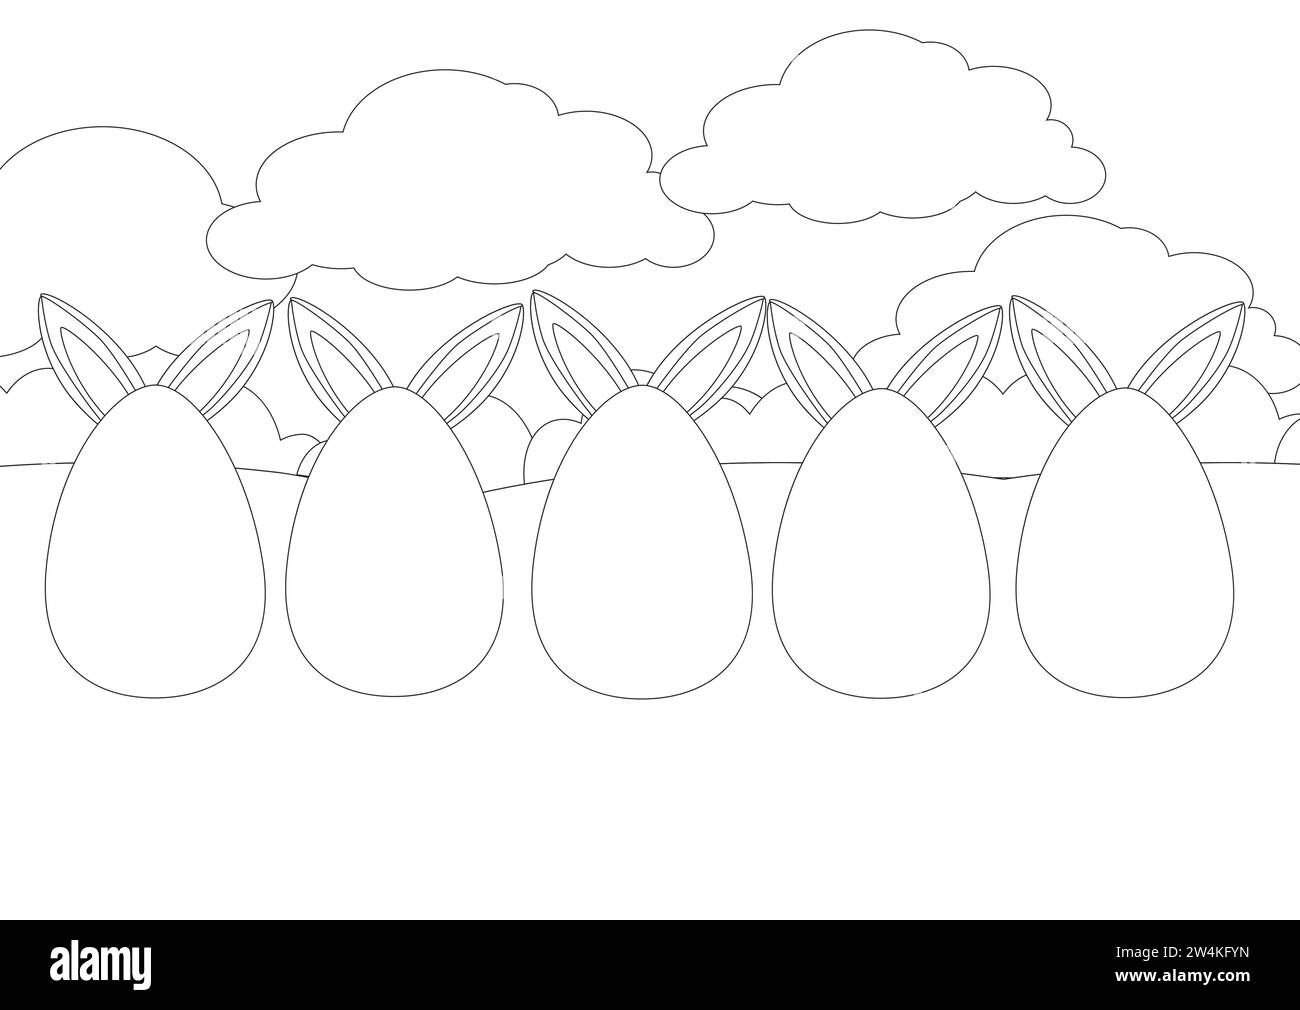 Pagina da colorare. Grandi uova dipinte si stagliano sull'erba verde e le orecchie del Coniglio pasquale sporgono da dietro. Uno striscione orizzontale lungo . Illustrazione Vettoriale